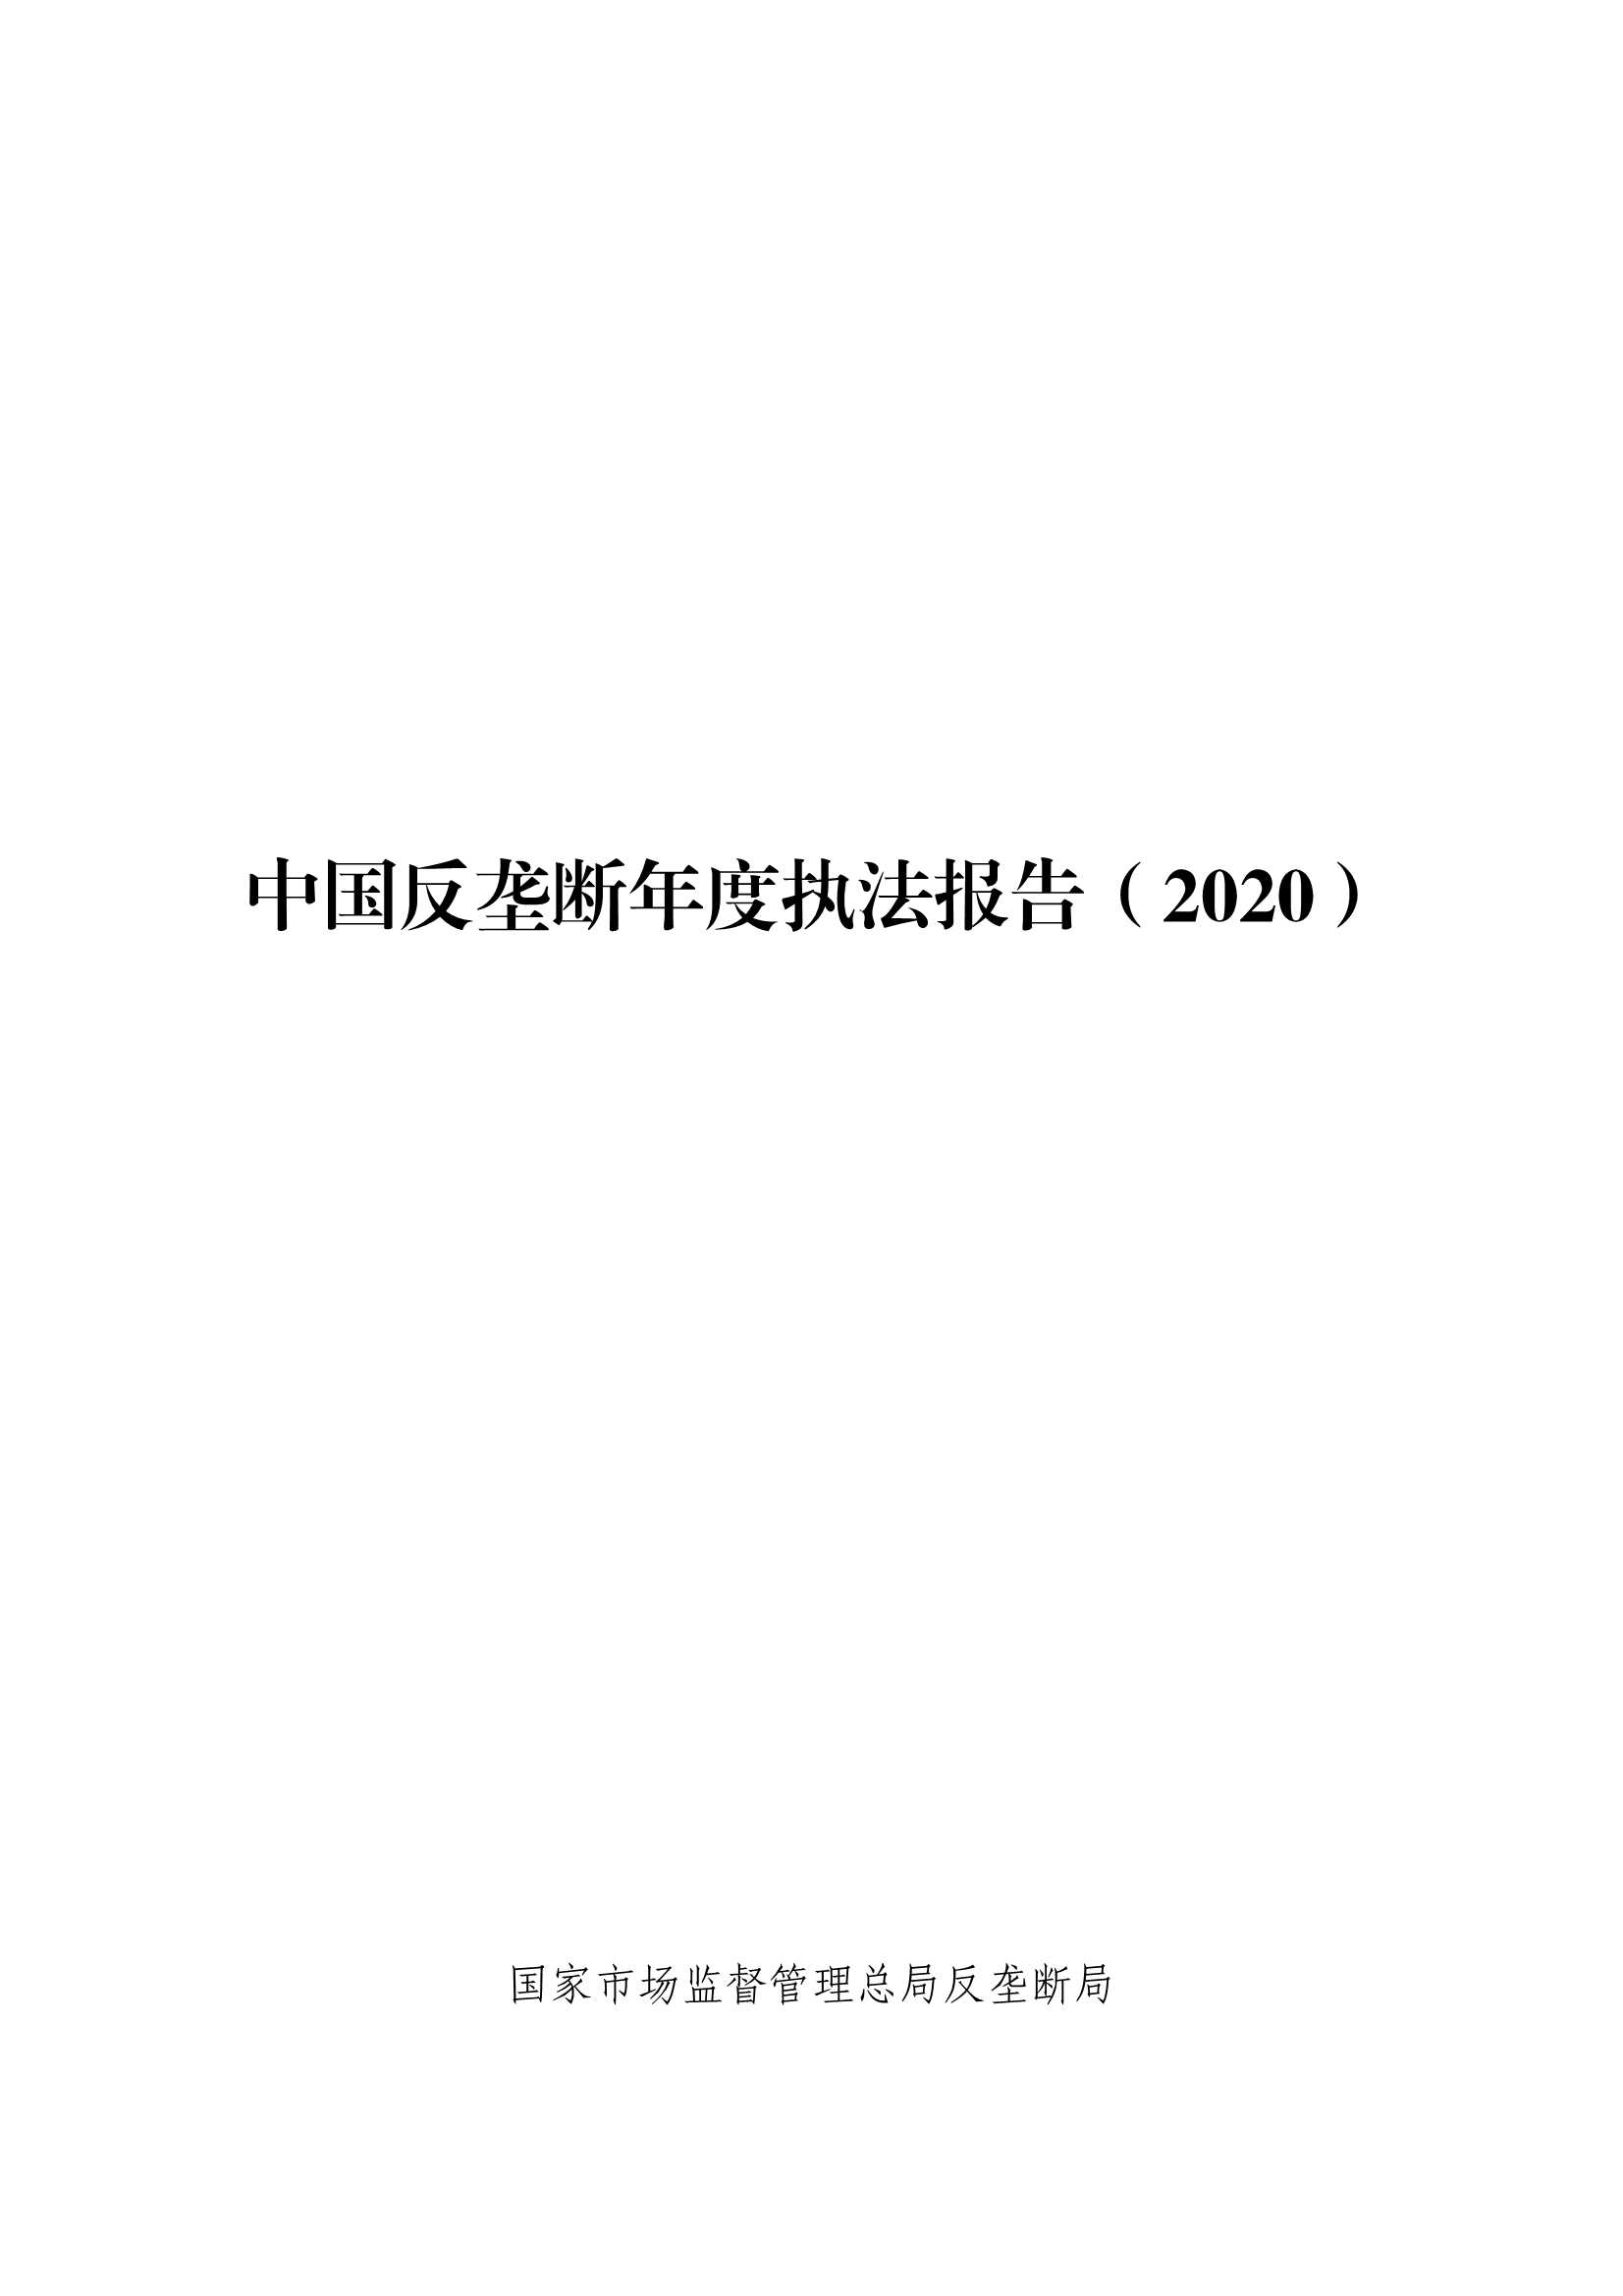 市场监管总局-中国反垄断年度执法报告(2020)-2021.09-267页